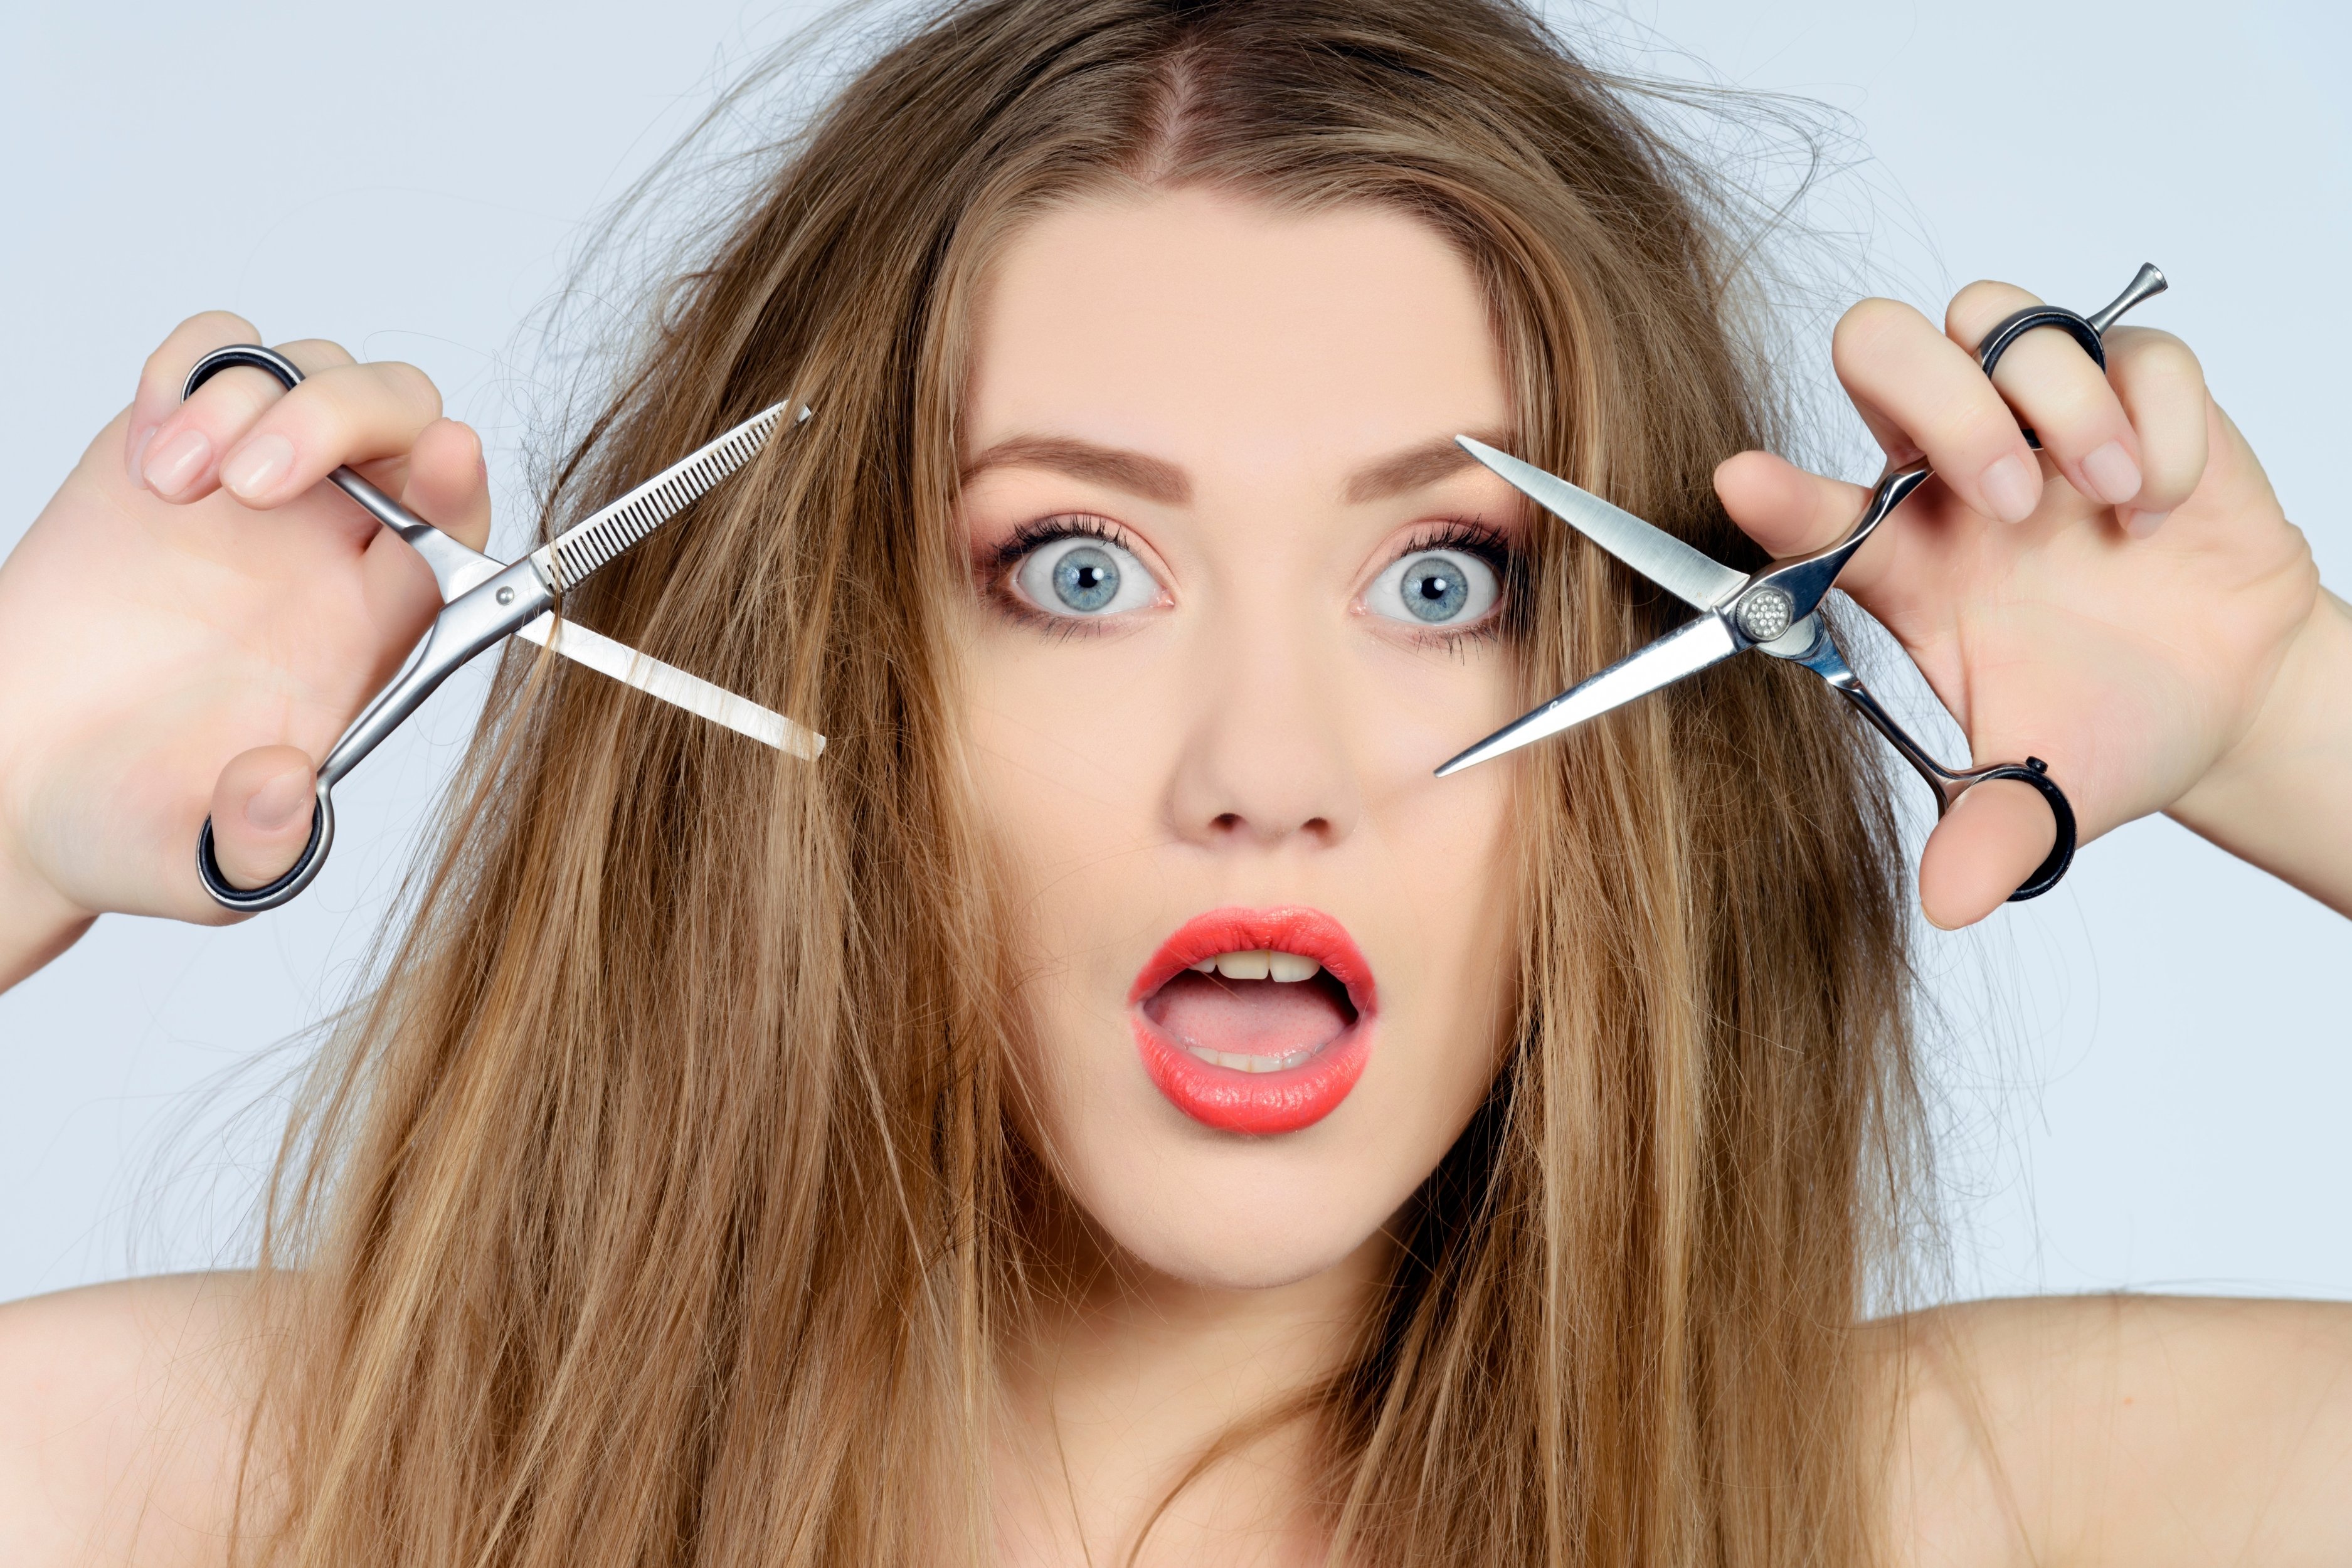 Το κούρεμα μπορεί πράγματι να επιταχύνει το ρυθμό ανάπτυξης των μαλλιών; Δες πώς τα βοηθάει